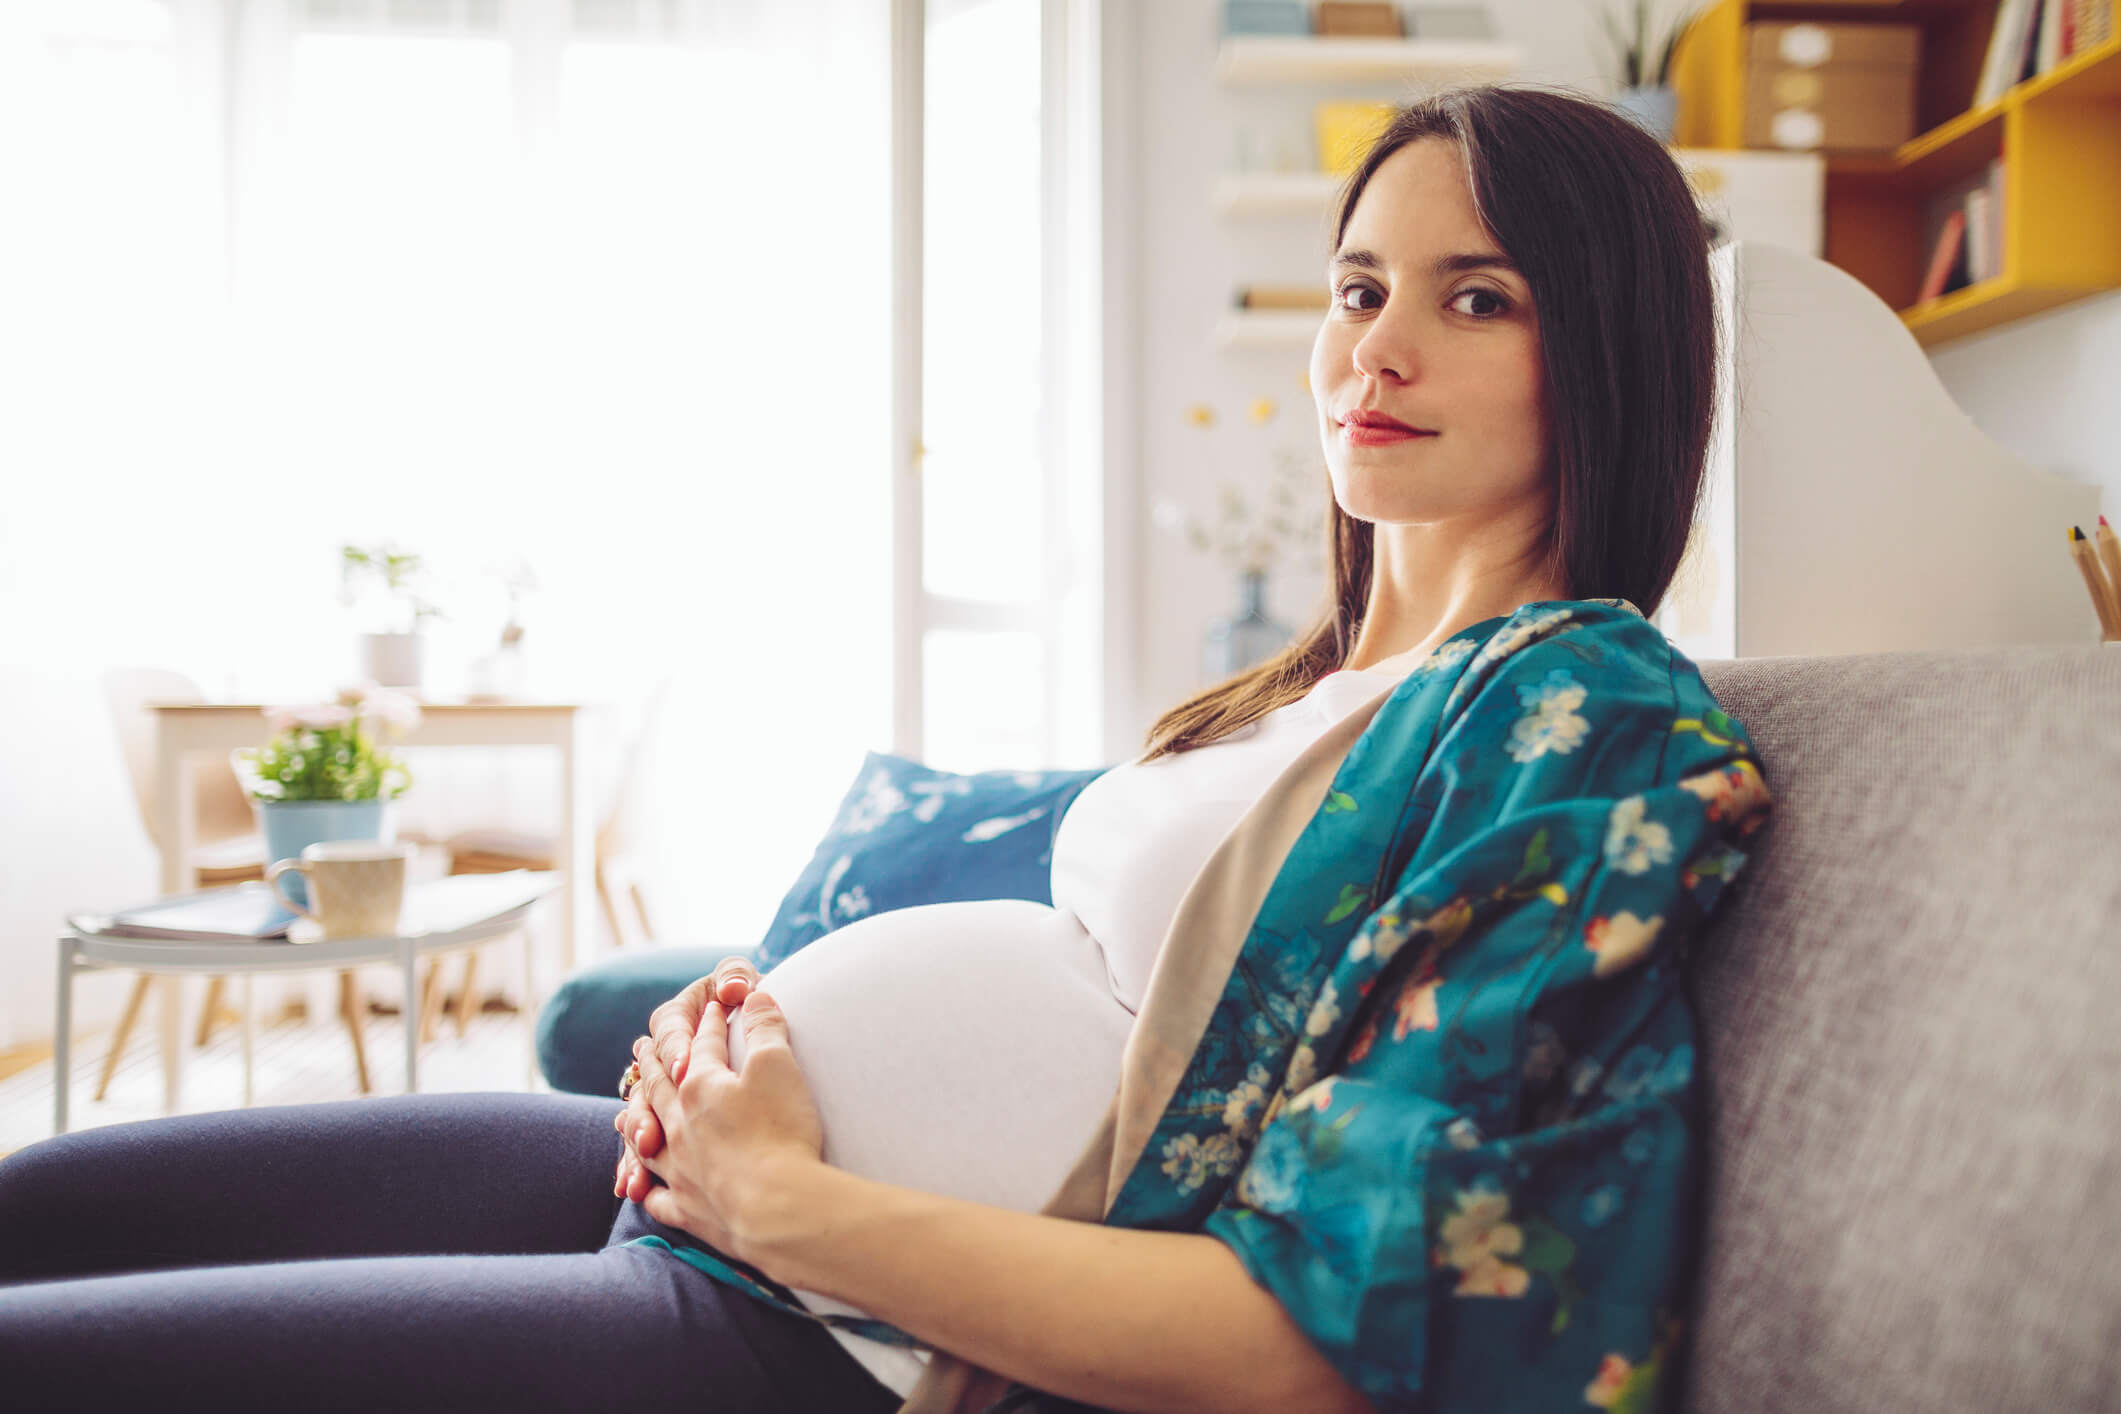 Les femmes enceintes sont-elles particulièrement affectées par la pandémie?